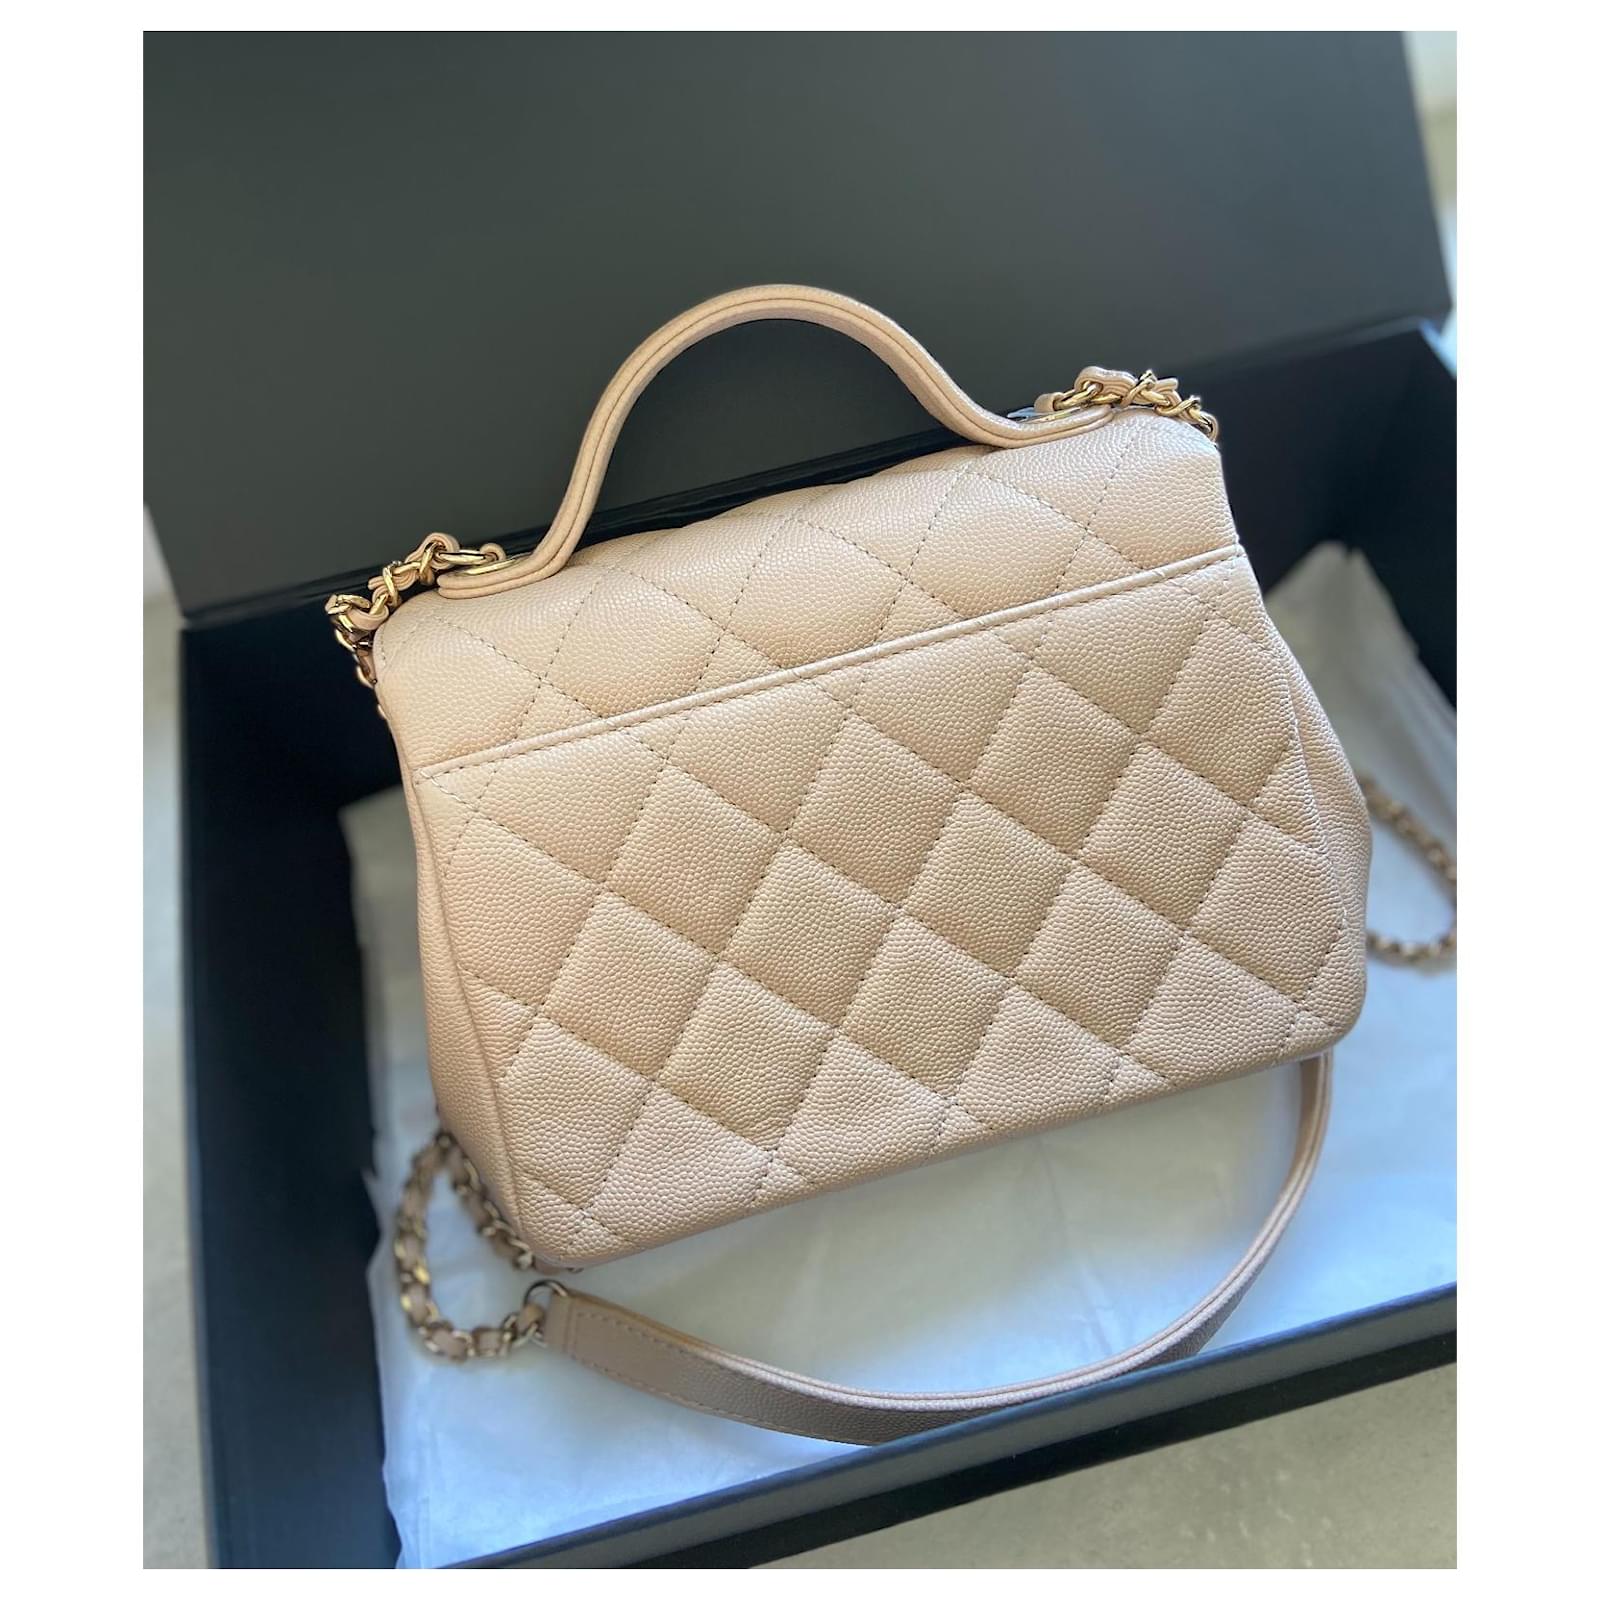 Chanel Business Affinity leather handbag - ShopStyle Shoulder Bags